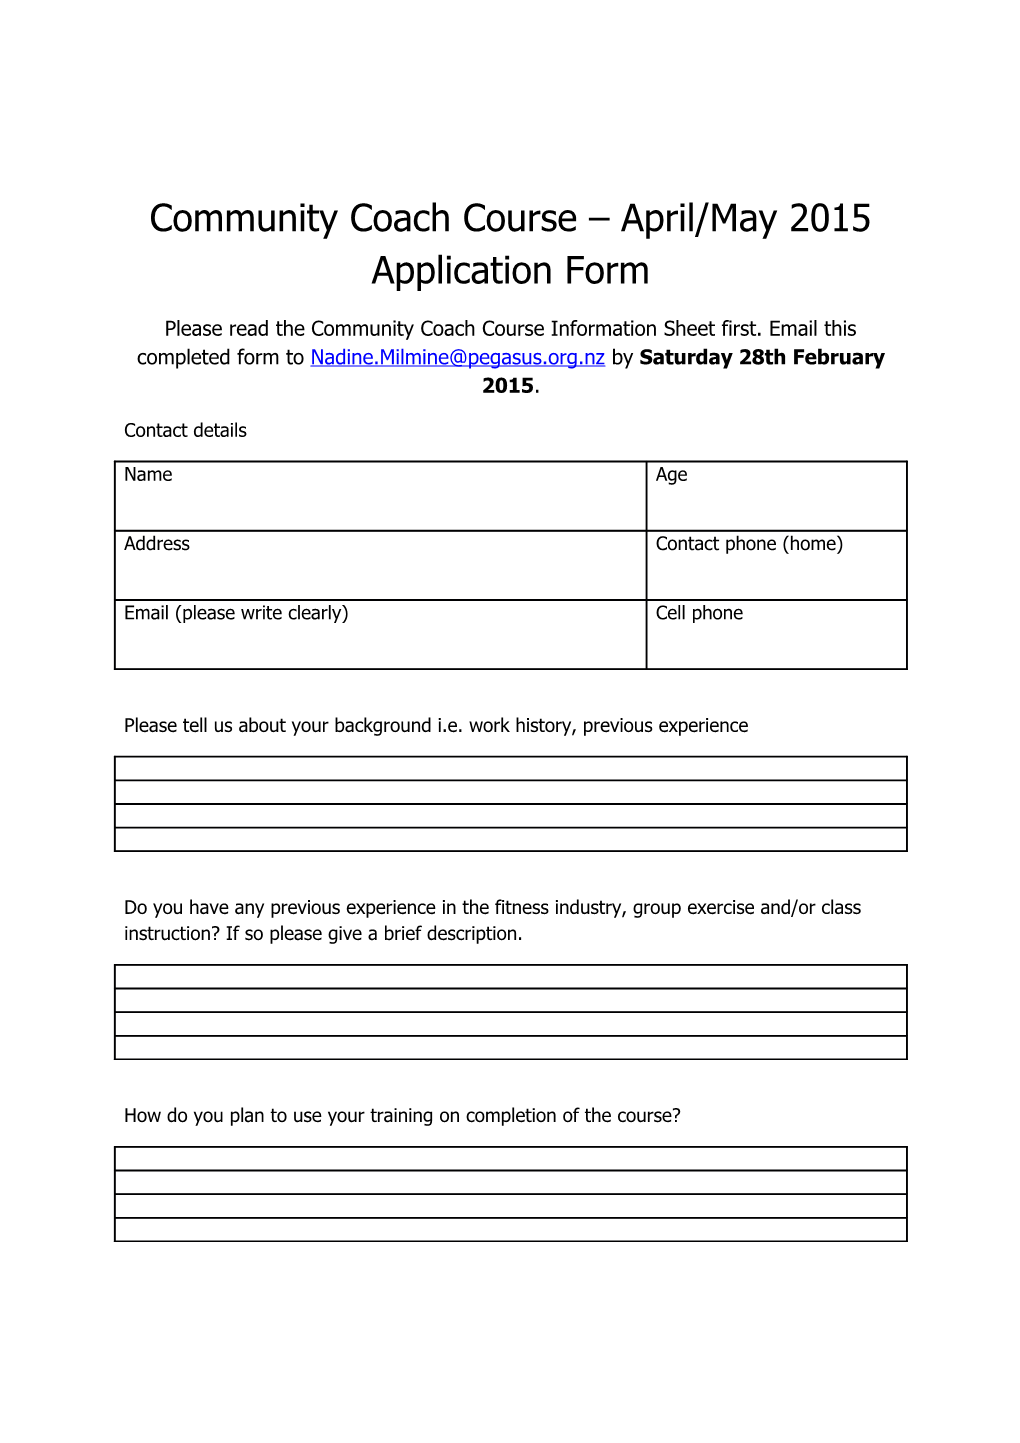 2015 Community Coach Course Application Form